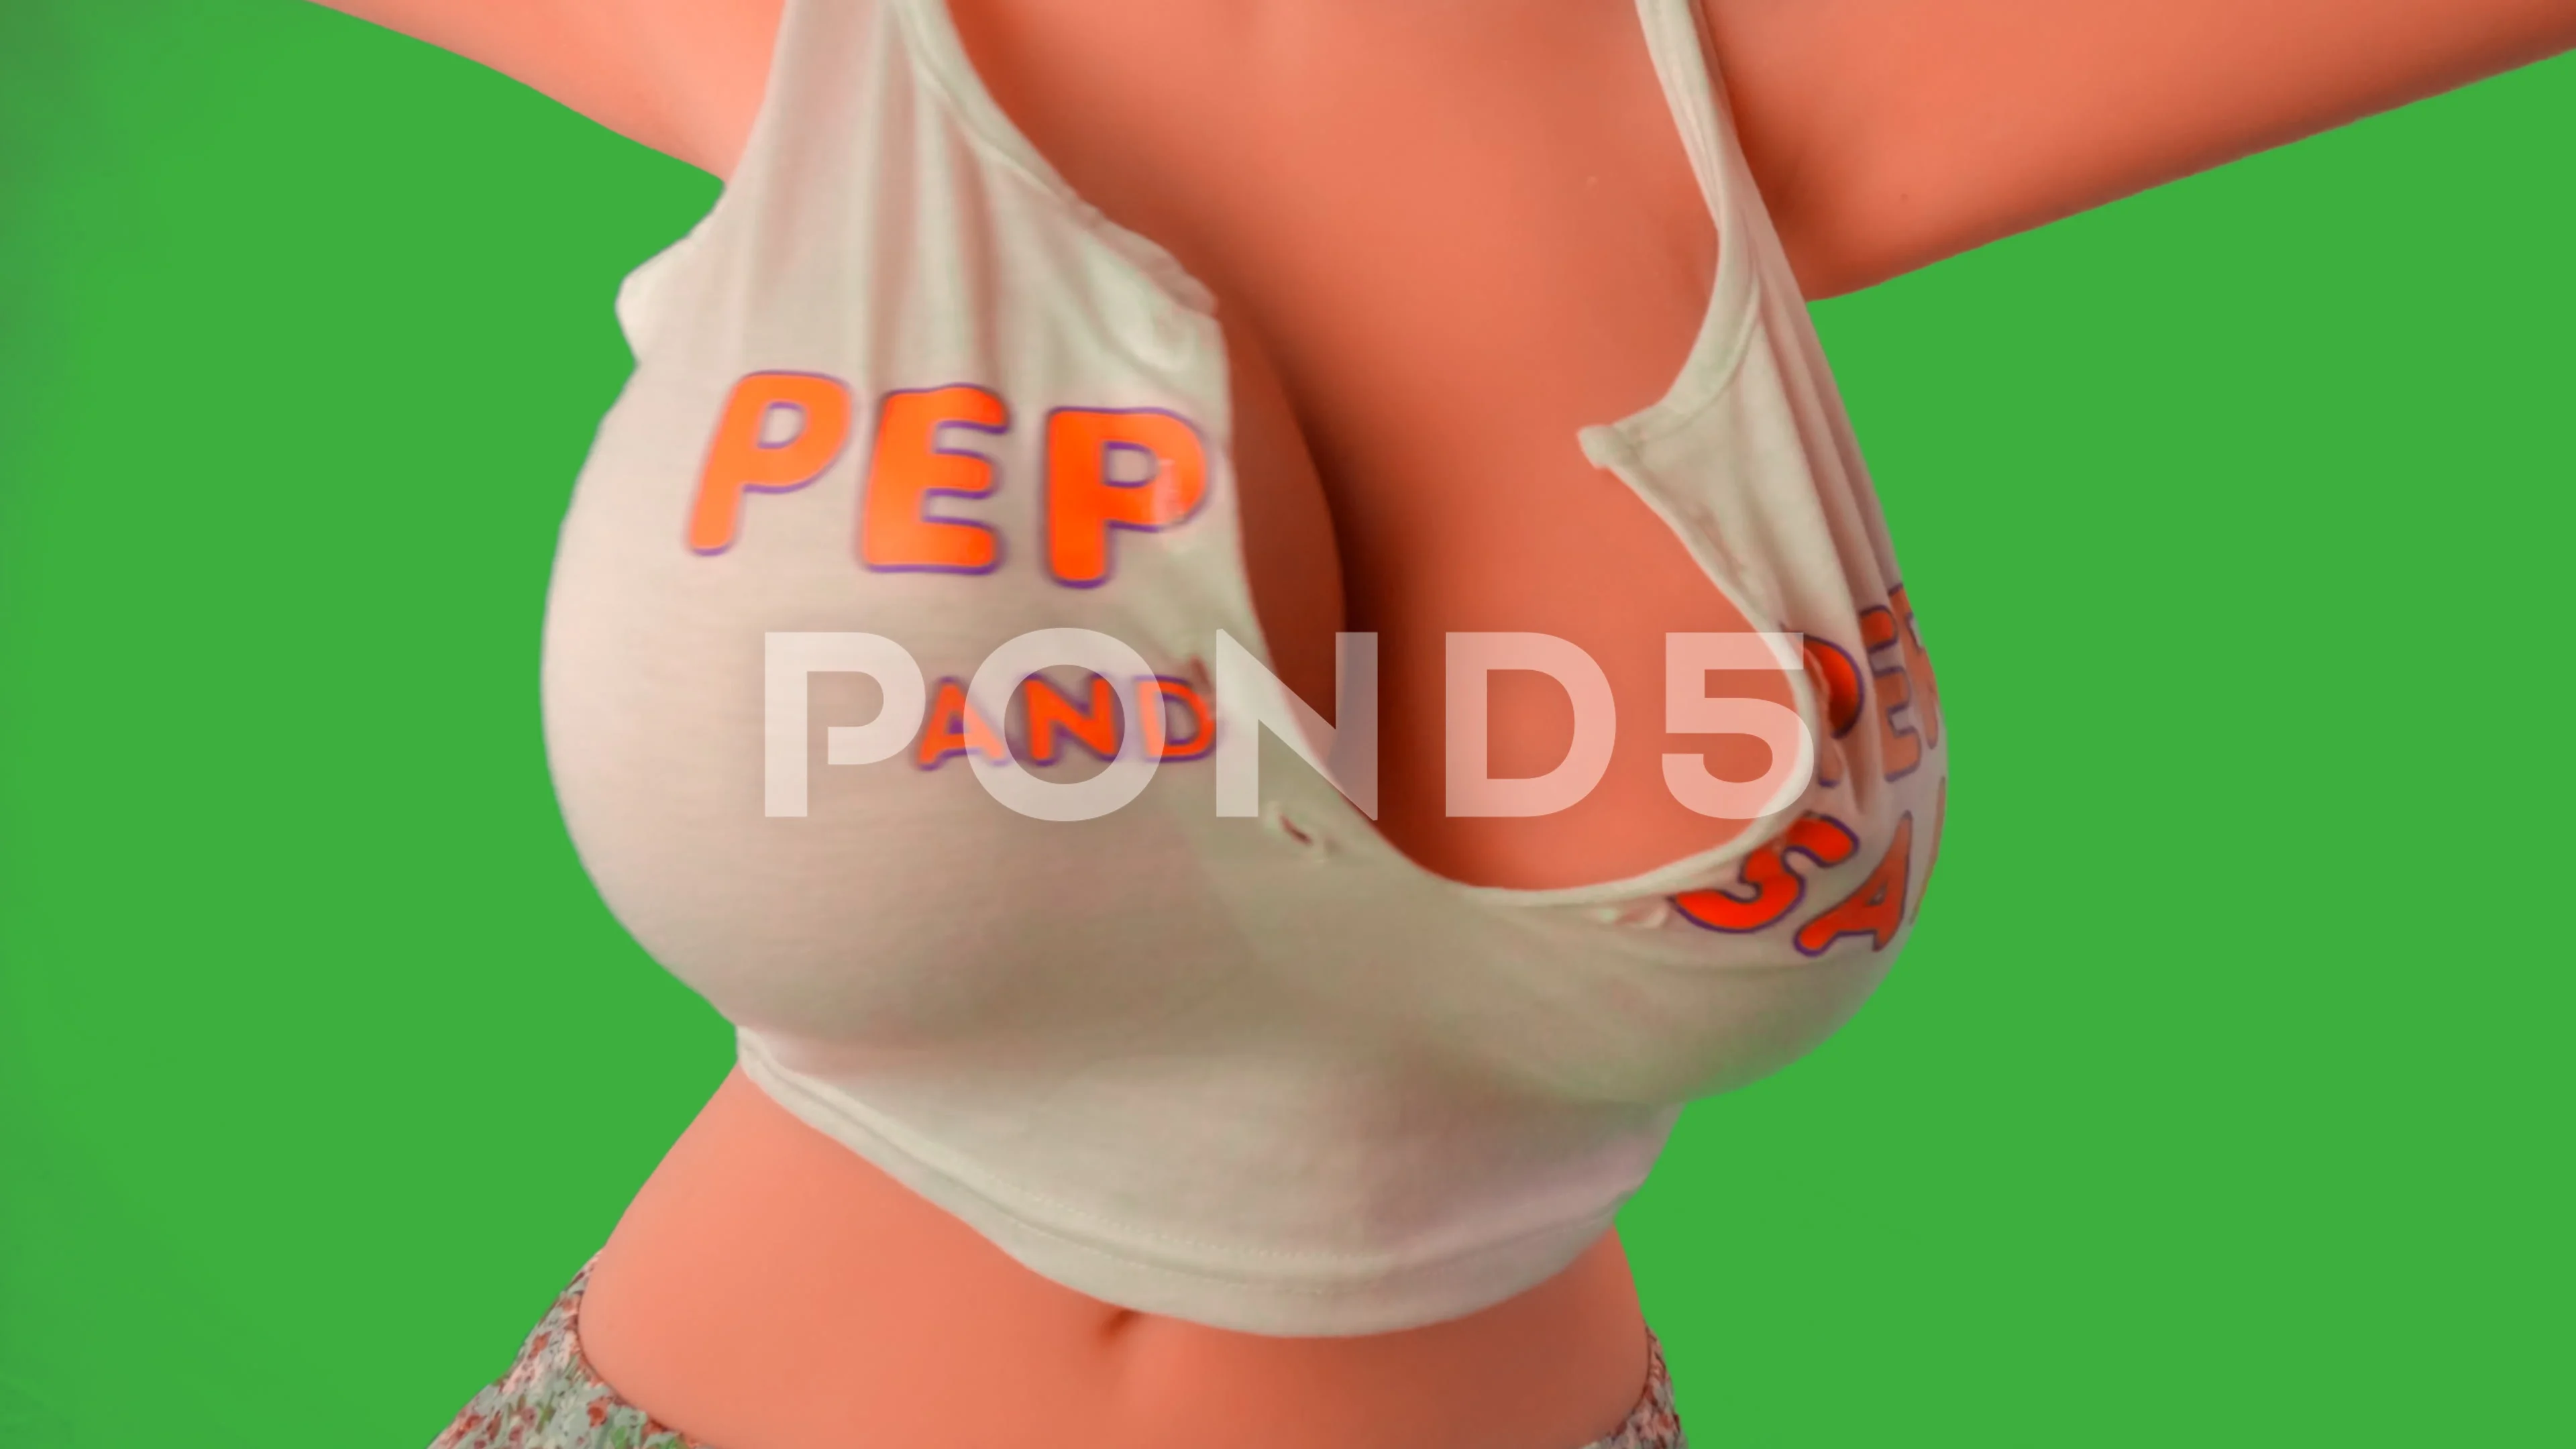 ben prew recommends big bouncing teen boobs pic